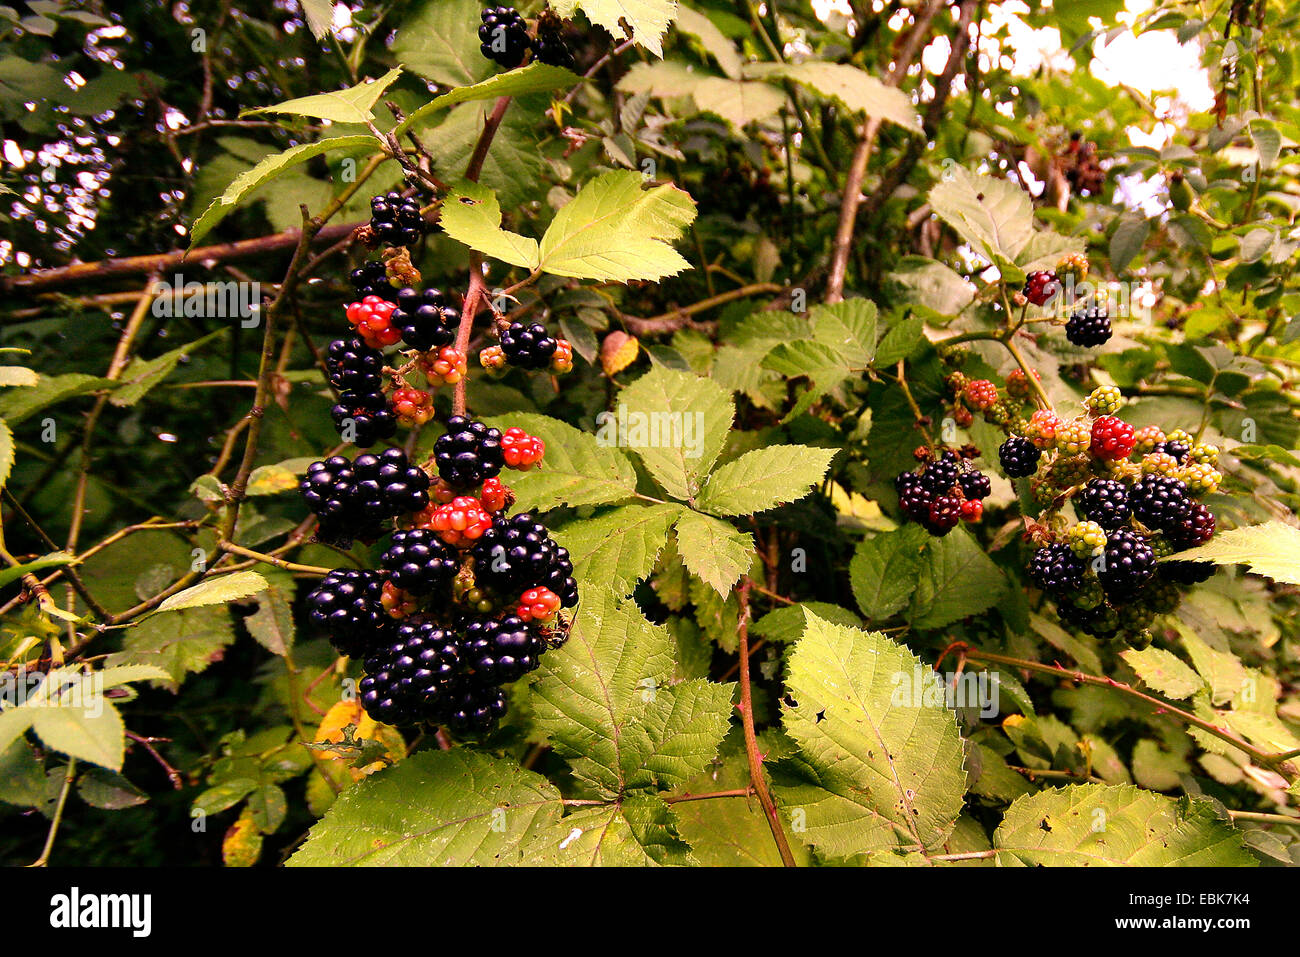 shrubby blackberry (Rubus fruticosusa agg.), with fruits, Germany, Rhineland-Palatinate Stock Photo